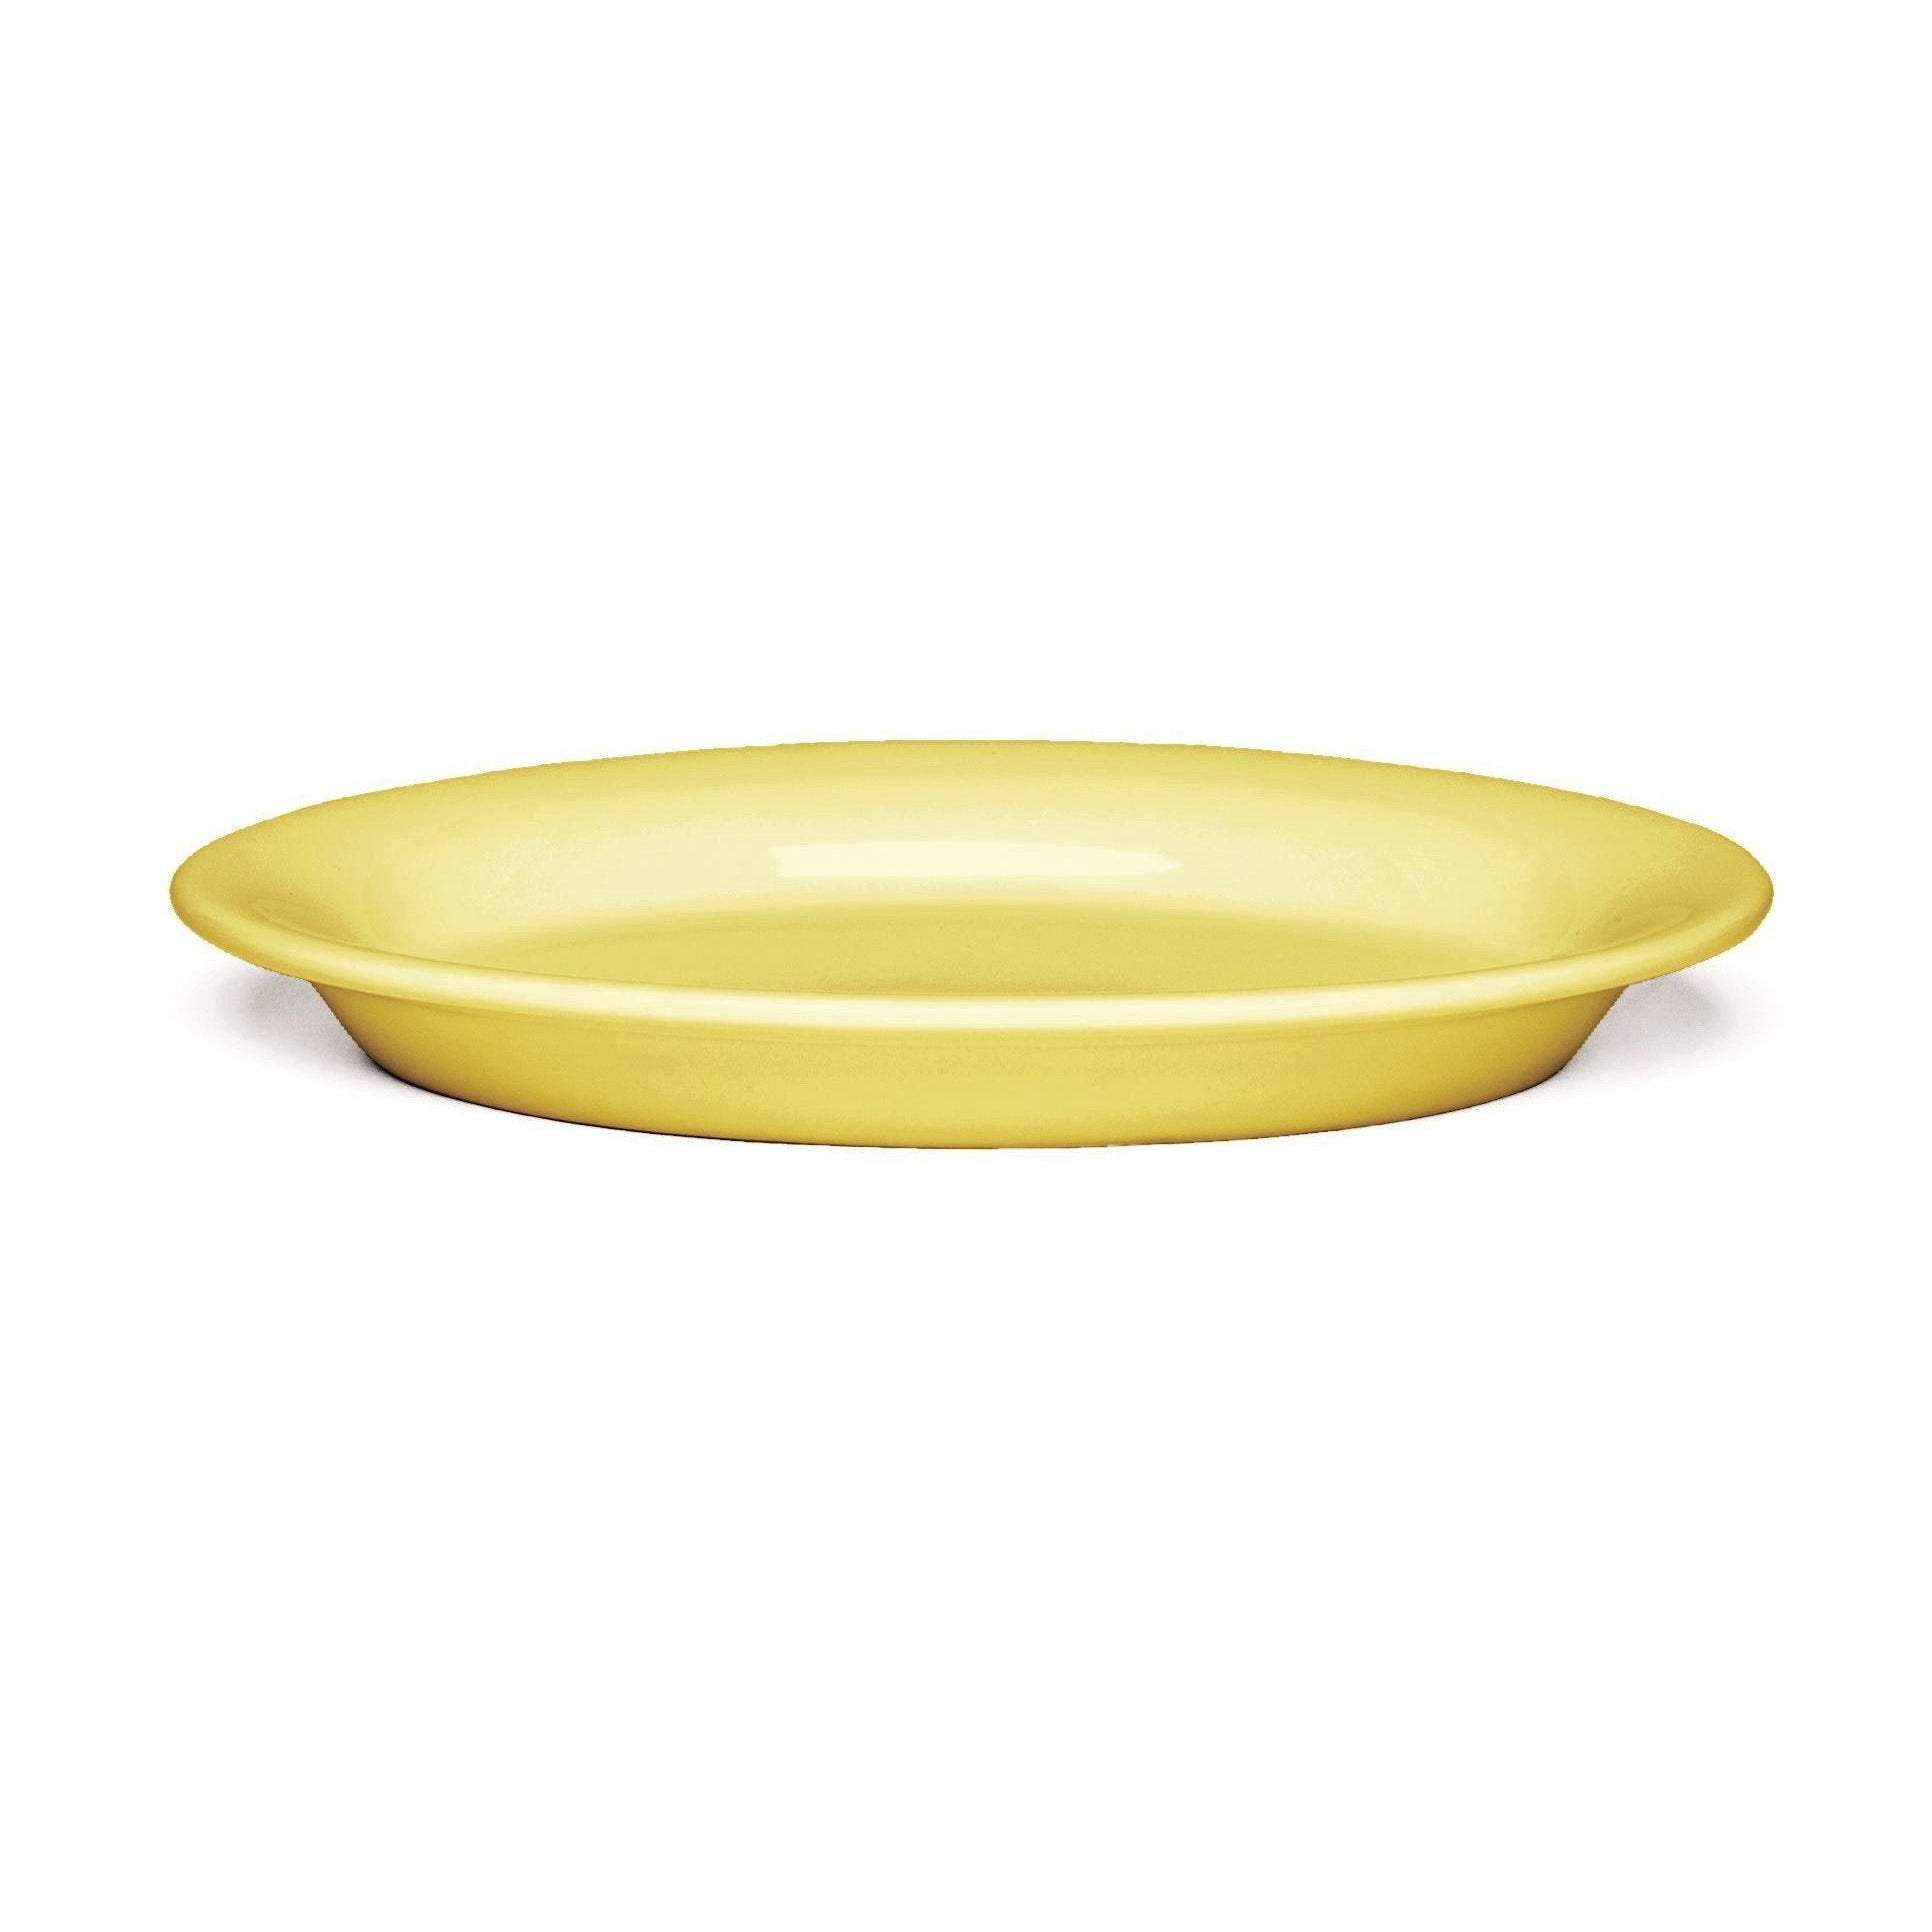 Kähler Ursula Plate Amarelo, Ø22 cm